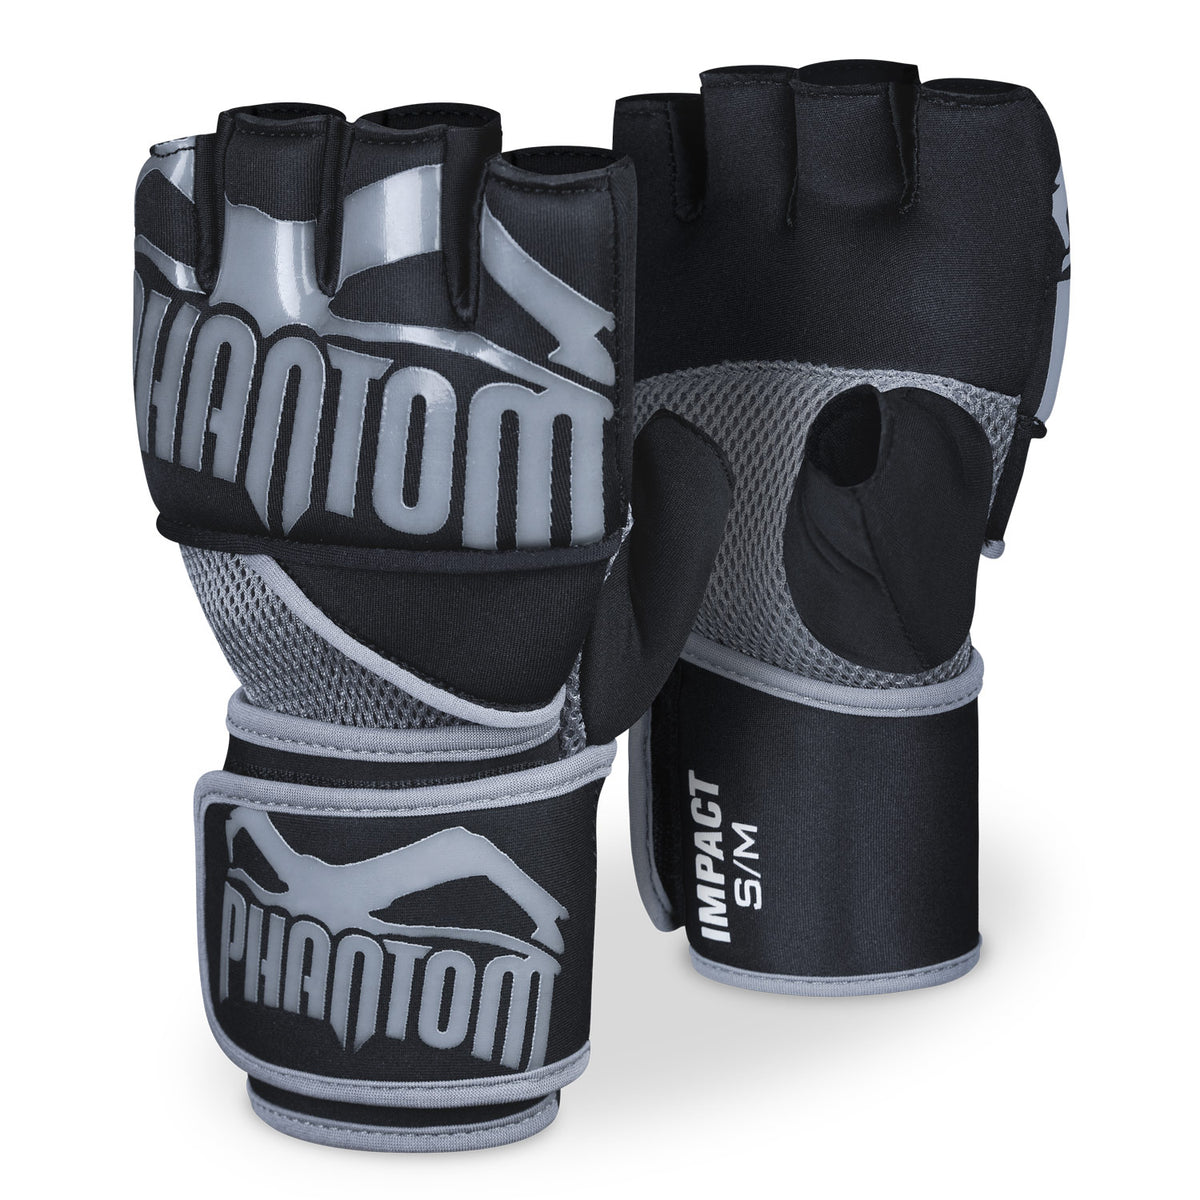 The Phantom Impact Gel neoprene gloves for your martial arts training.